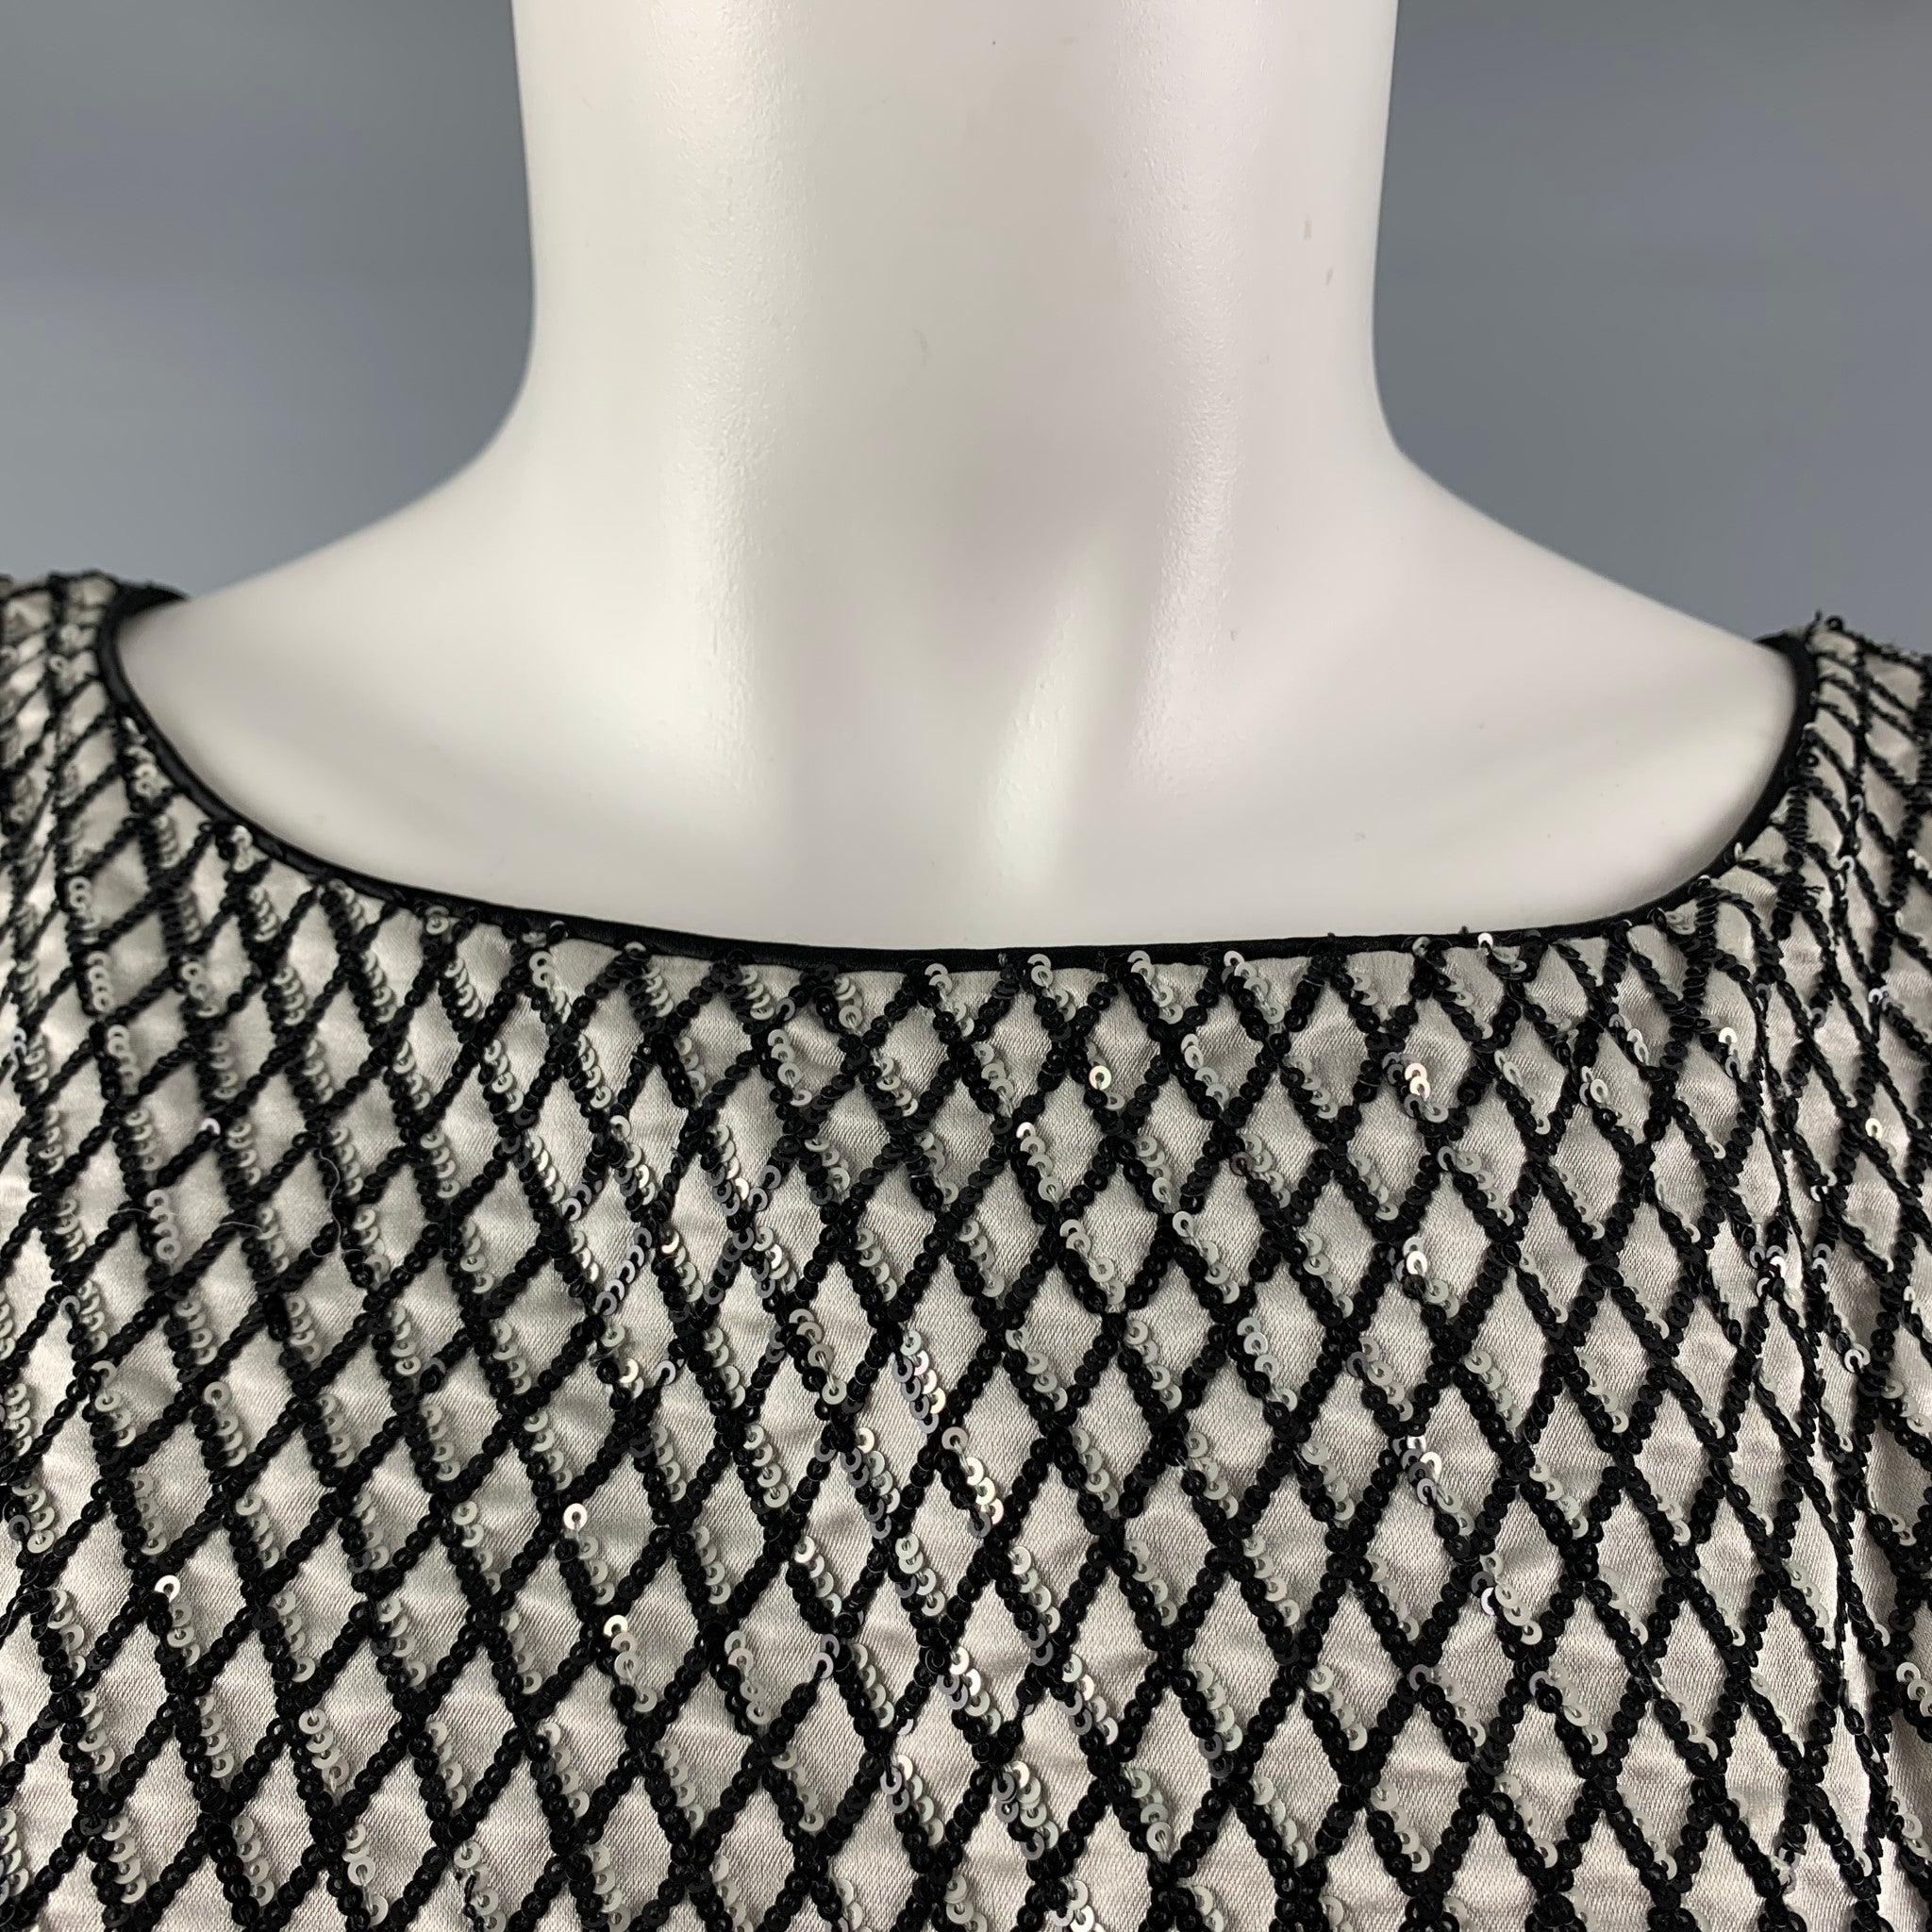 La robe MARC JACOBS se compose de soie pailletée grise et noire et présente un style décontracté, des manches et une fermeture à glissière au dos. Fabriqué aux États-Unis. Excellent état d'origine. 

Marqué :   0 

Mesures : 
 
Épaule : 15 pouces